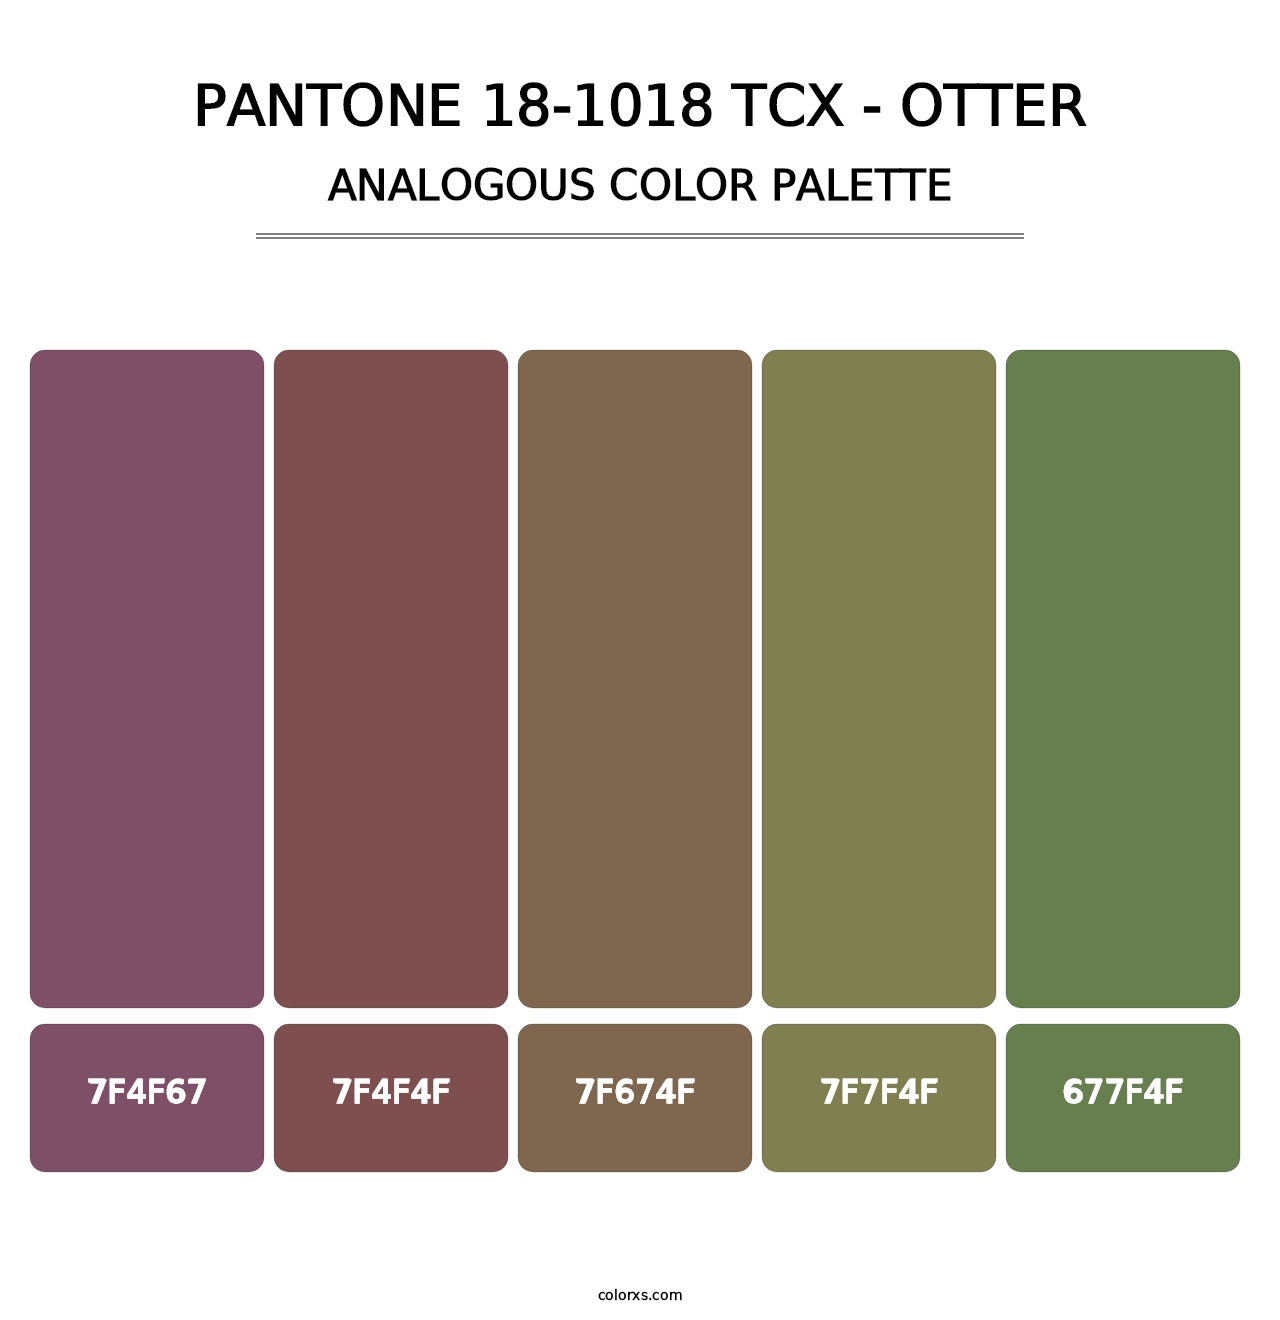 PANTONE 18-1018 TCX - Otter - Analogous Color Palette